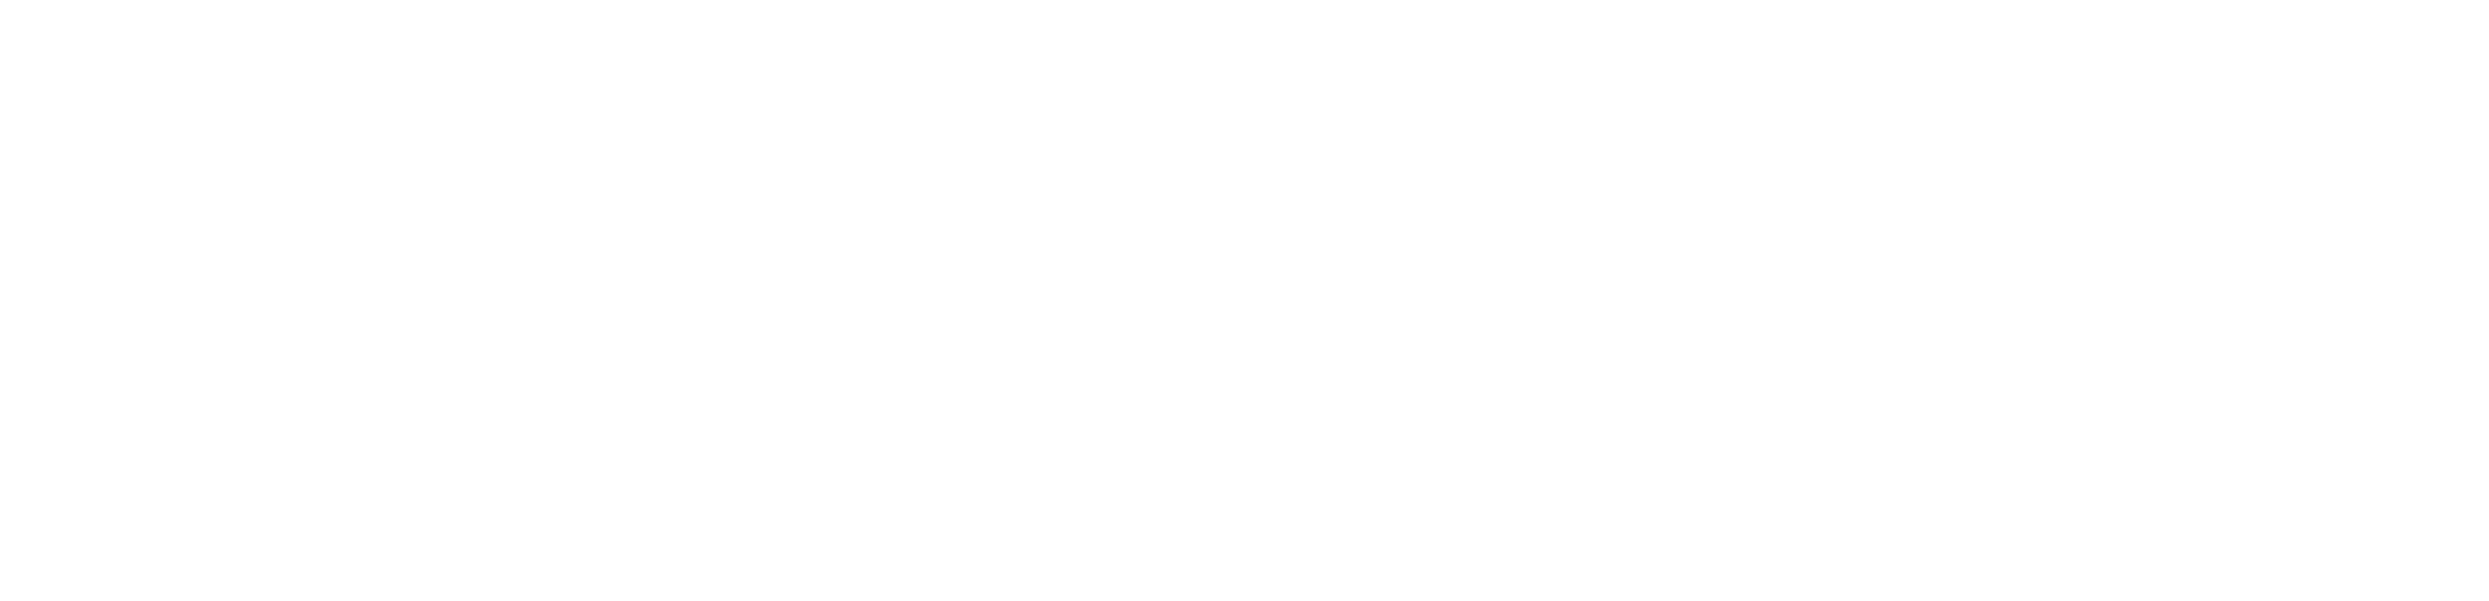 NewtekBank